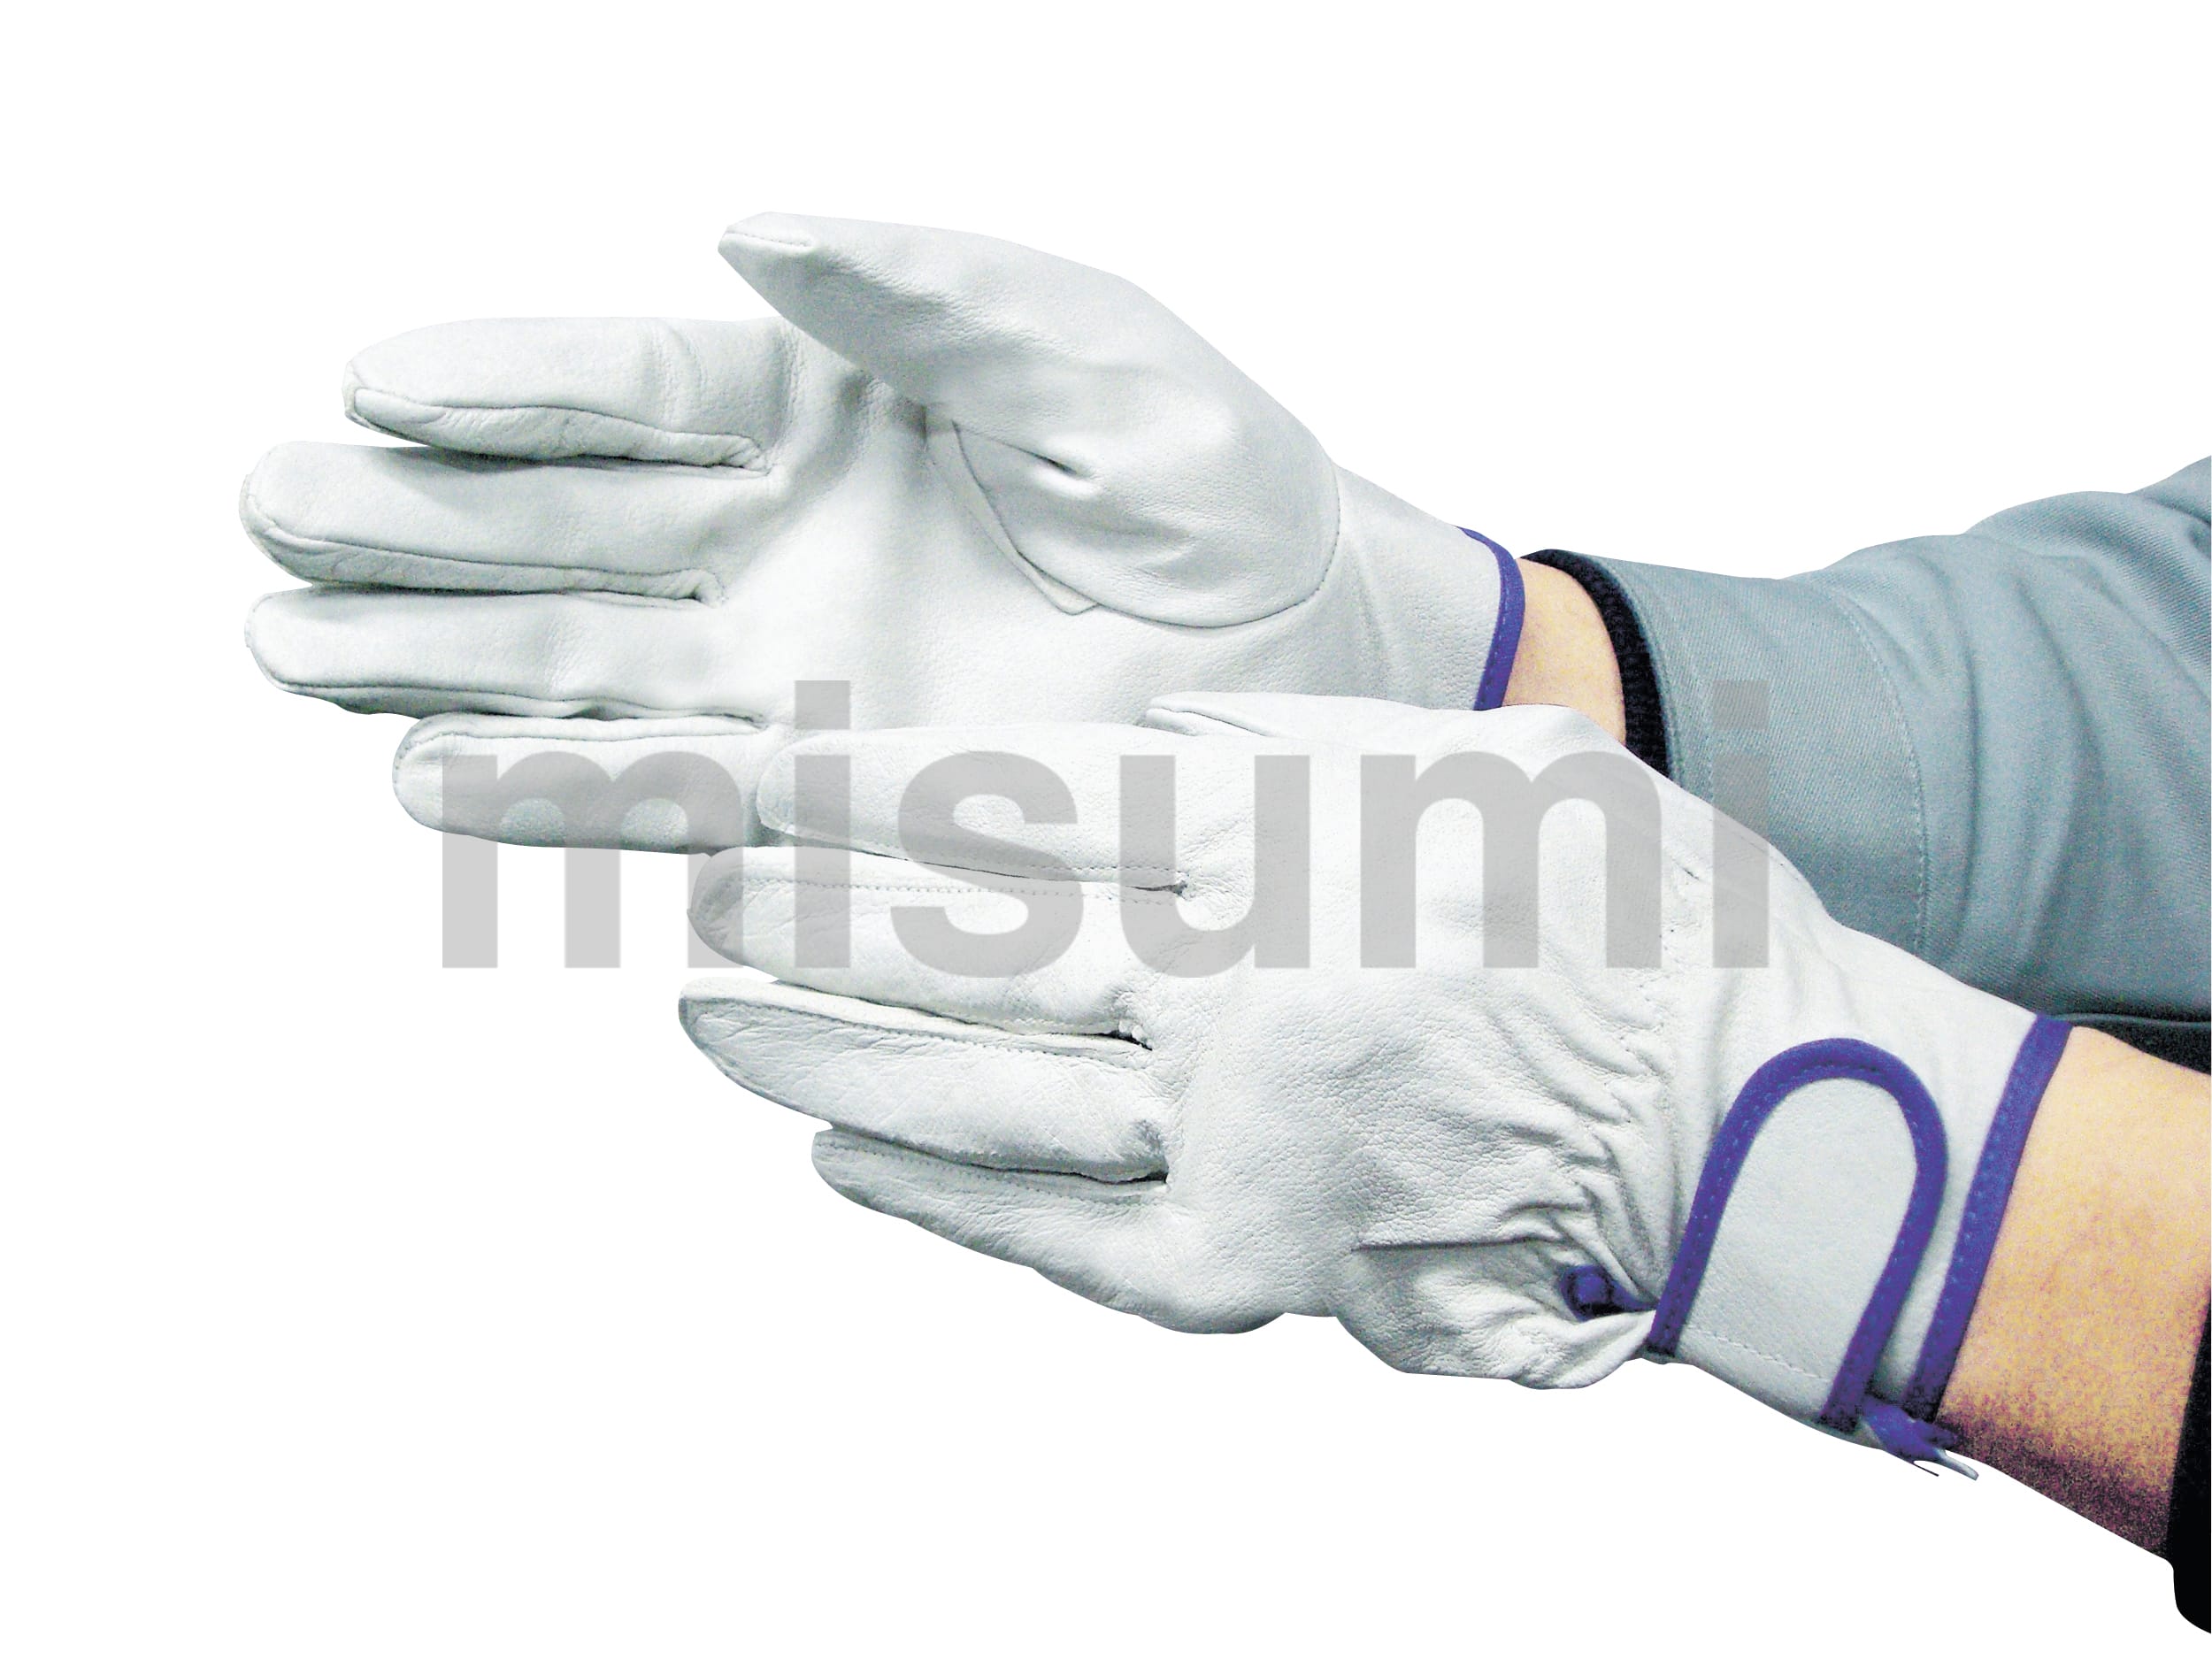 ミドリ安全 革手袋 MT-14D 甲メリヤス付 白 ミドリ安全 MISUMI(ミスミ)